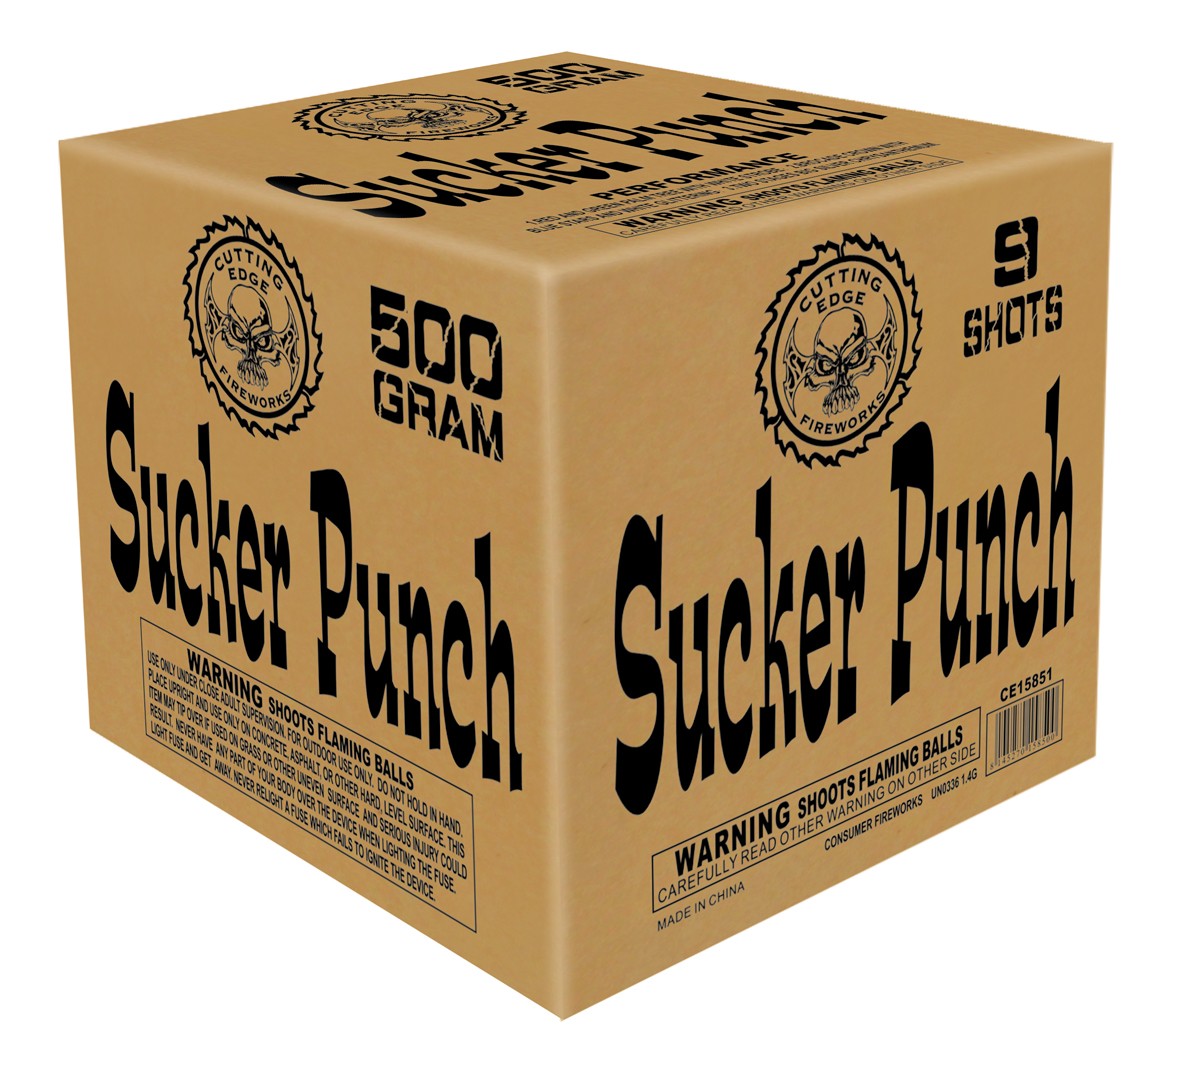 Sucker Punch 9 shot